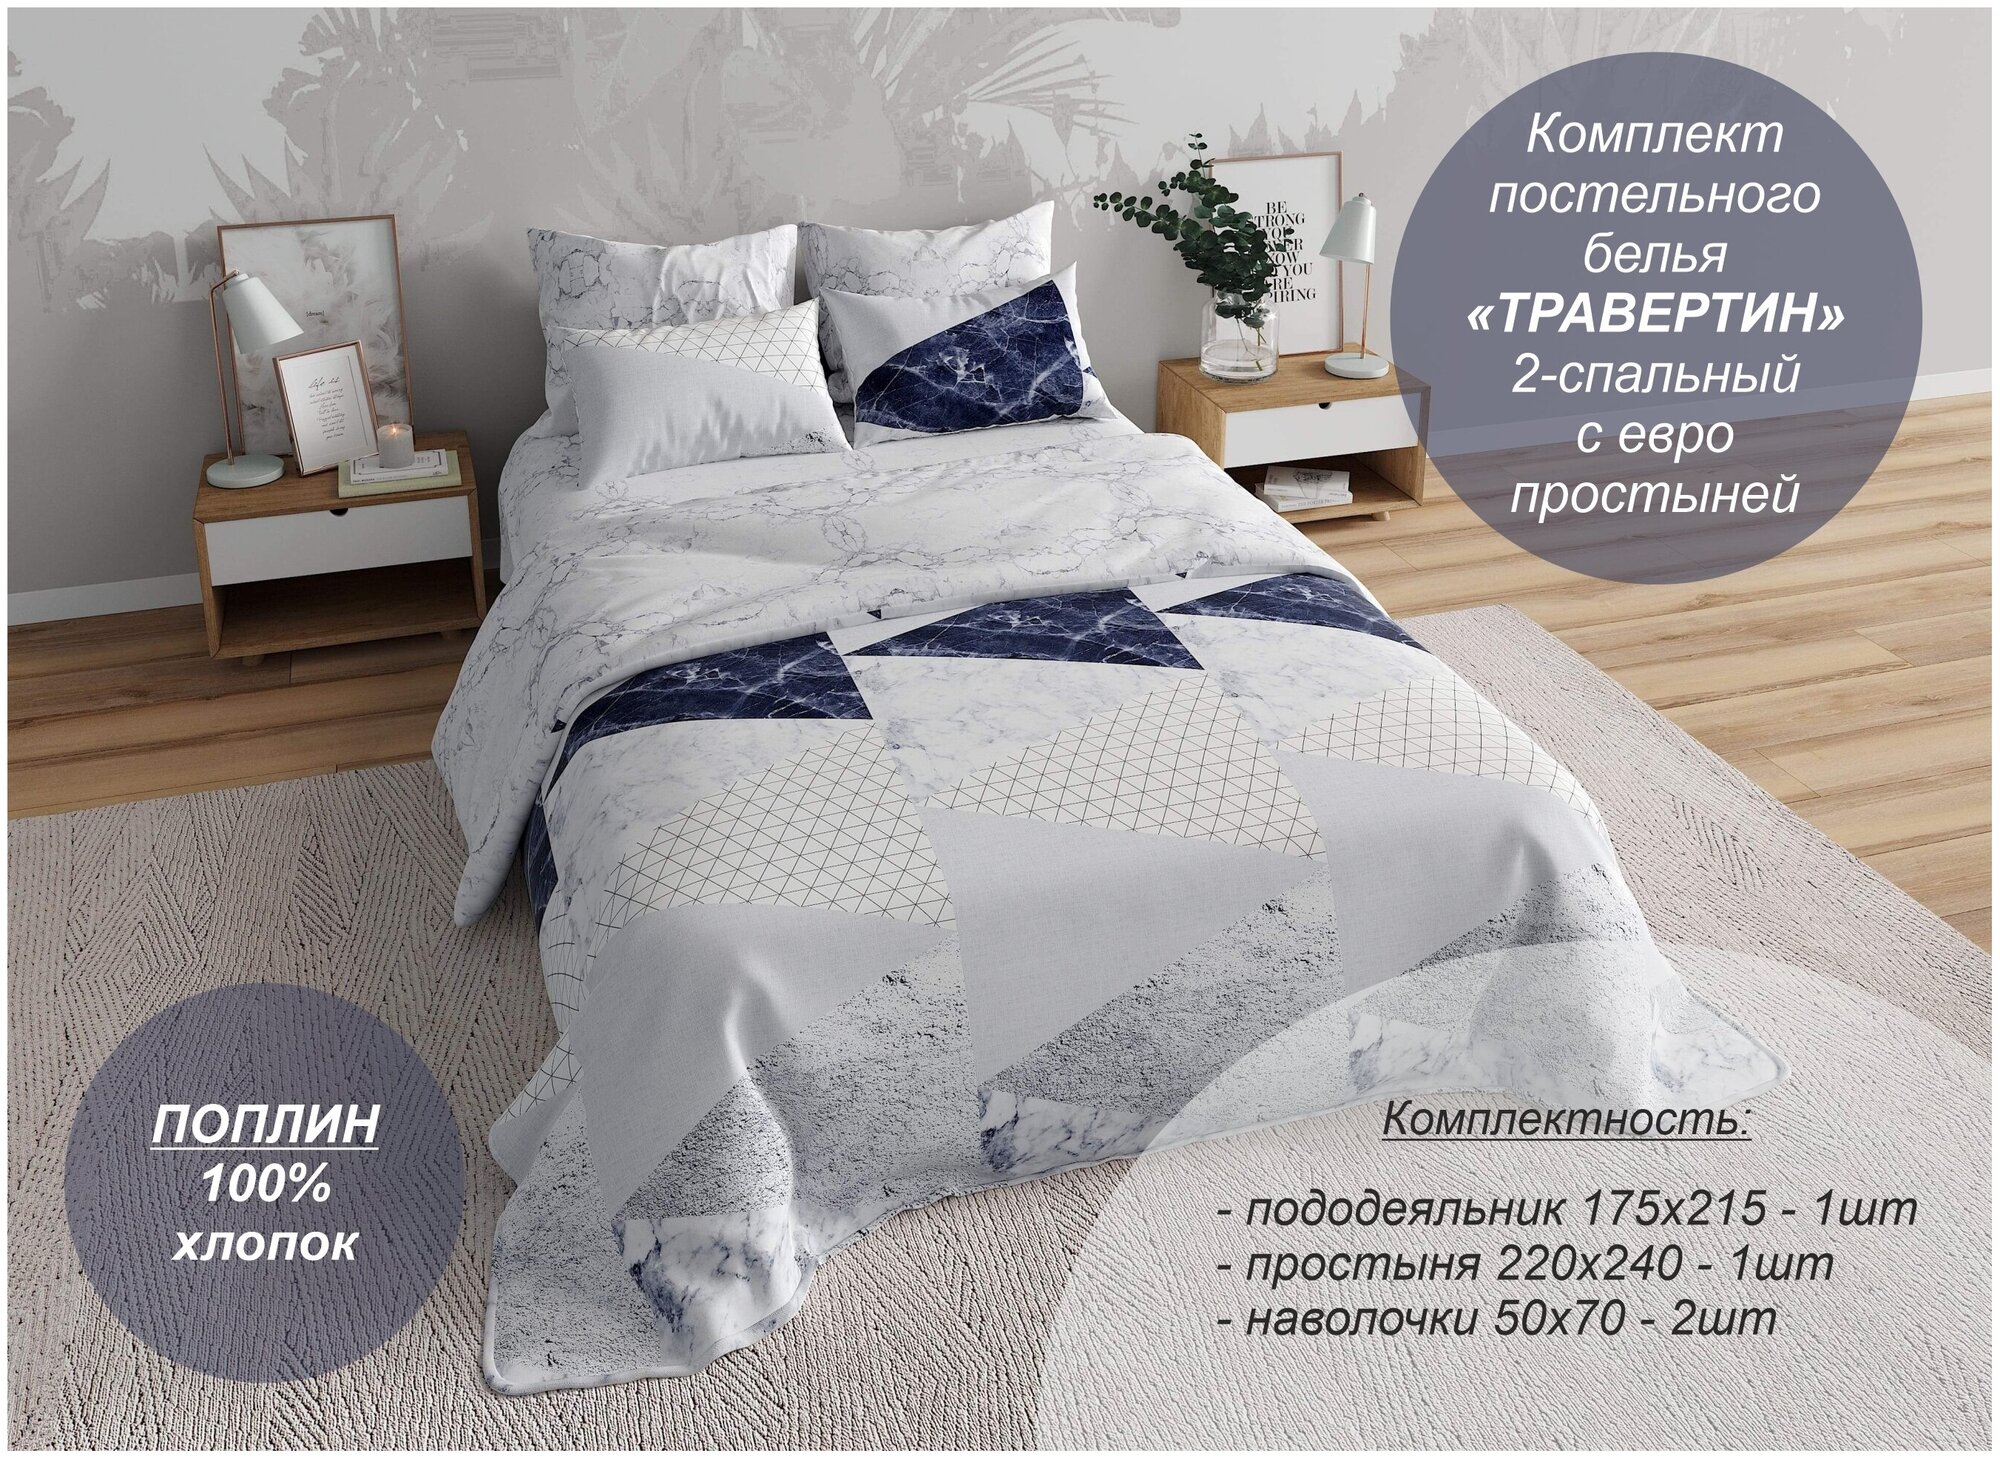 Комплект постельного белья "Травертин" 2-спальный с евро простыней (Поплин, 100% хлопок) - фотография № 1